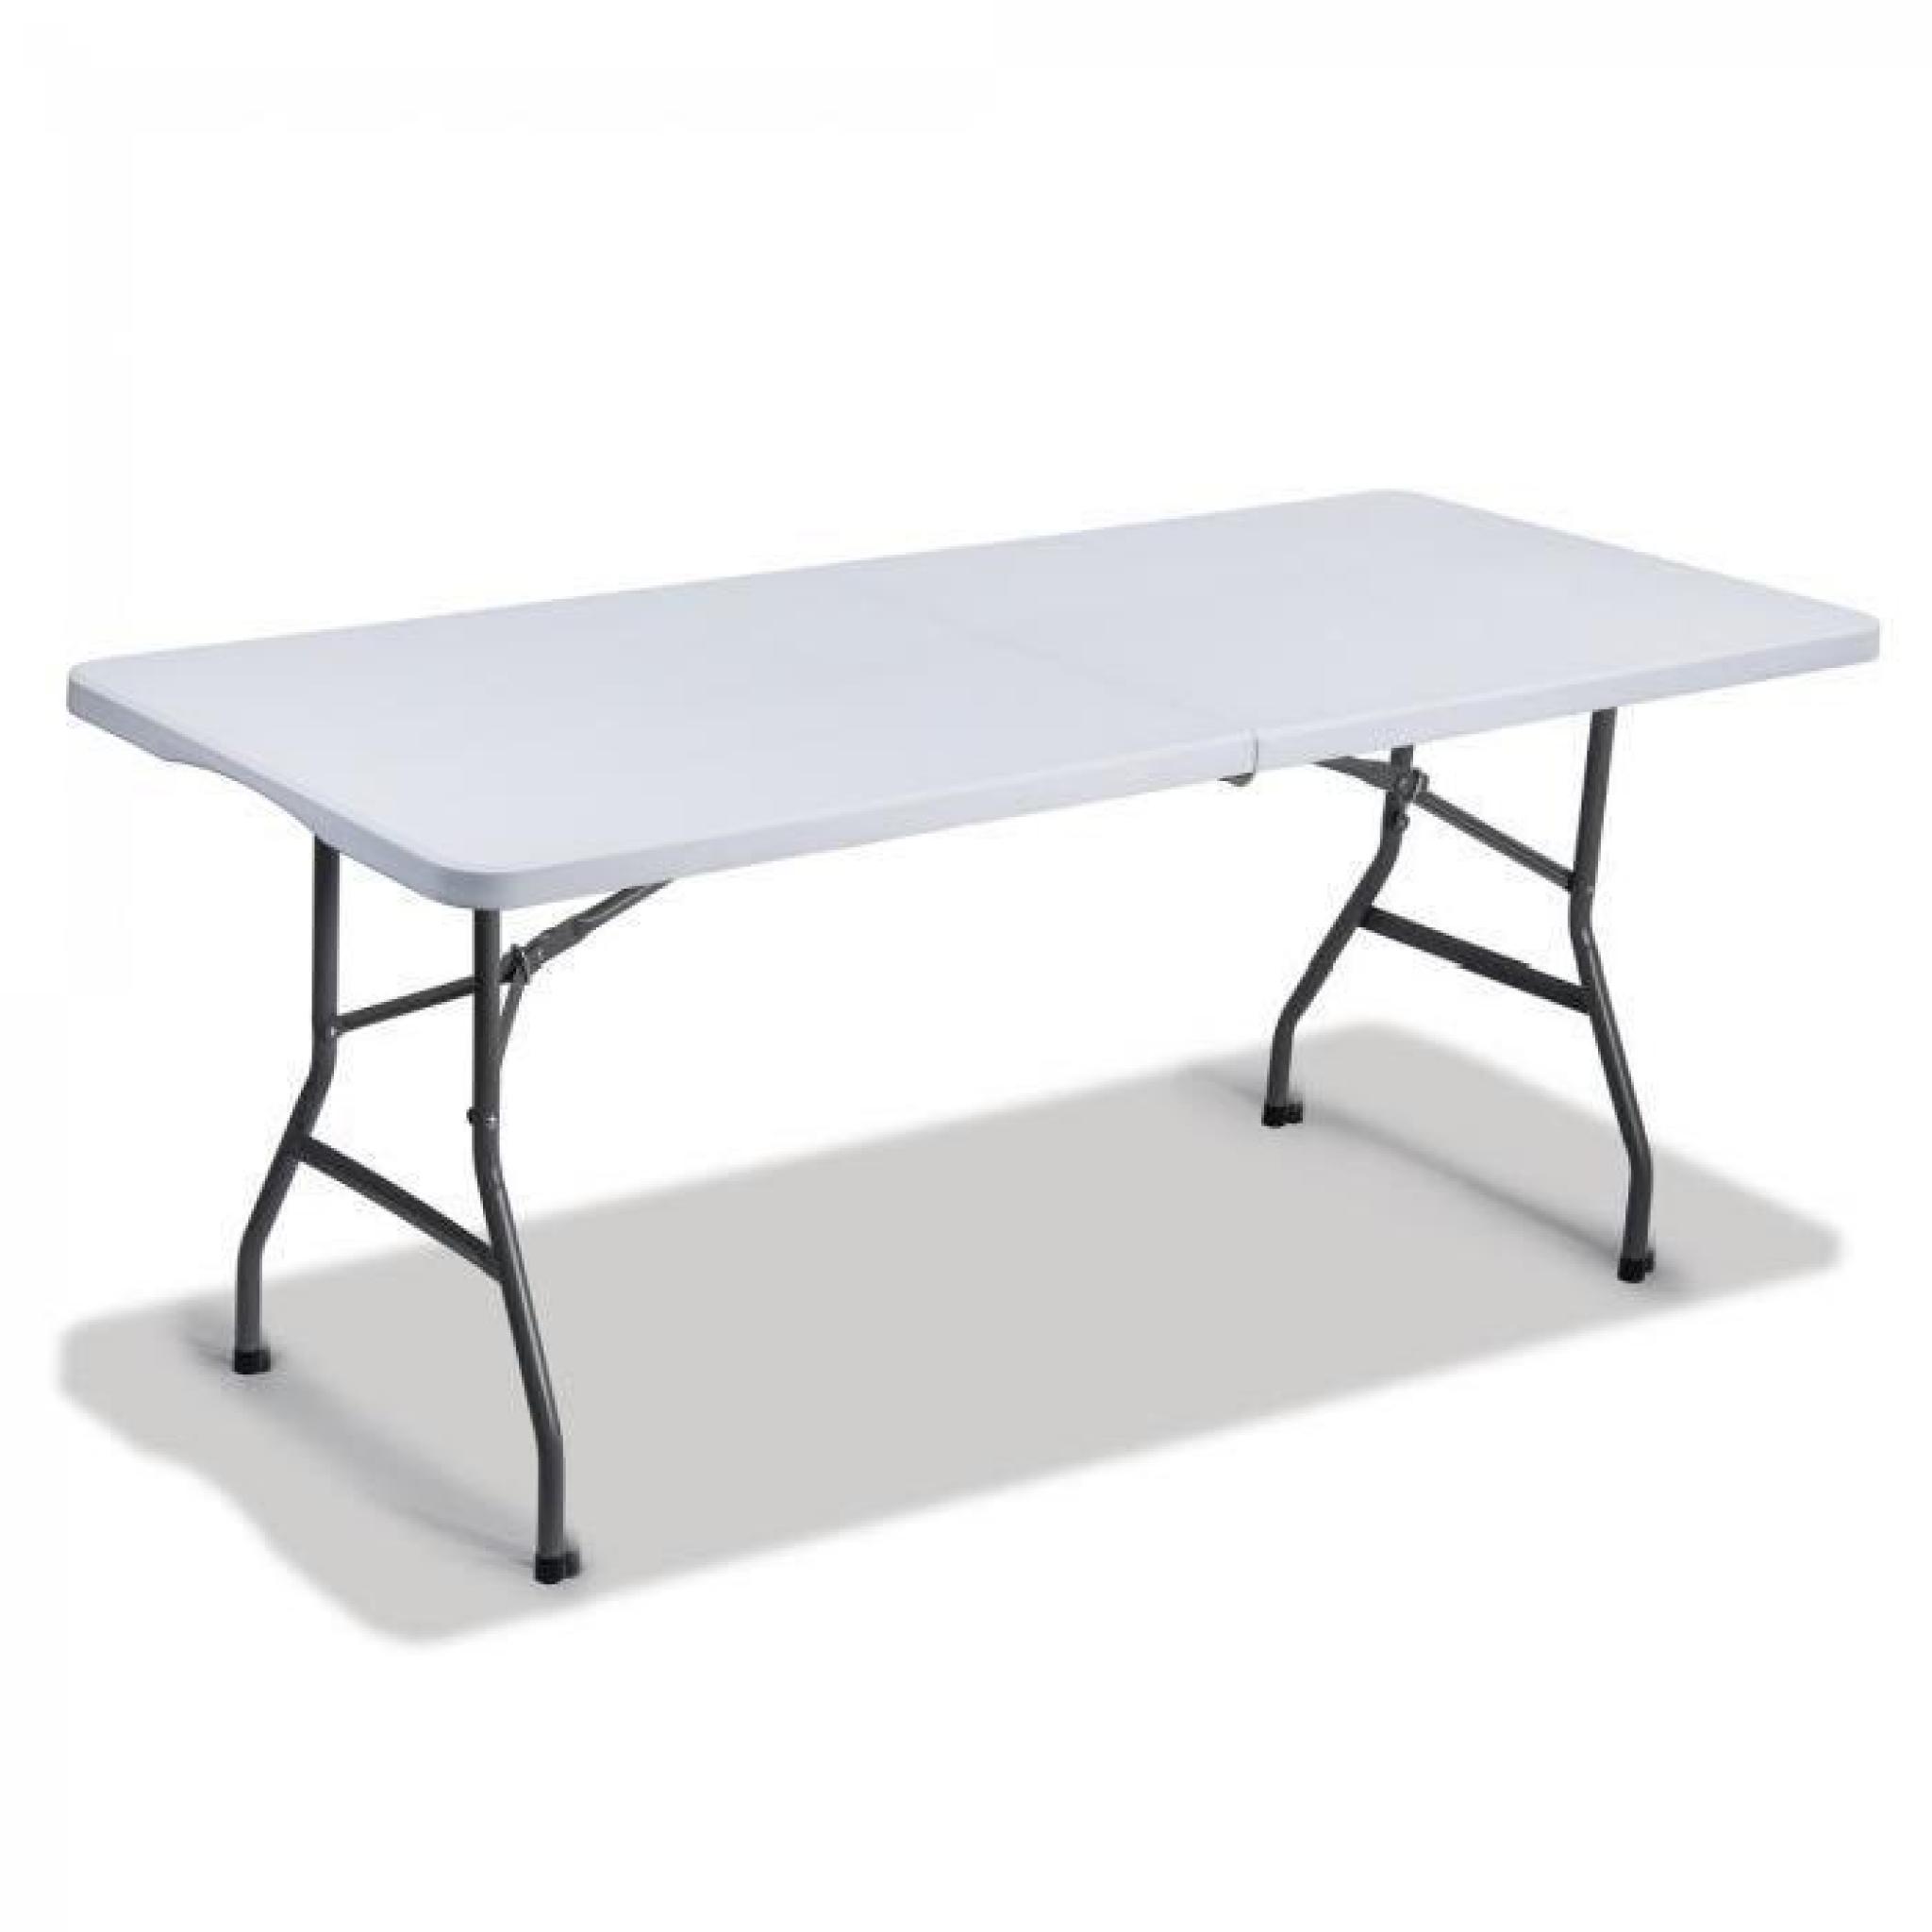 TABLE DE JARDIN EN PLASTIQUE - PLIABLE 180x75 cm